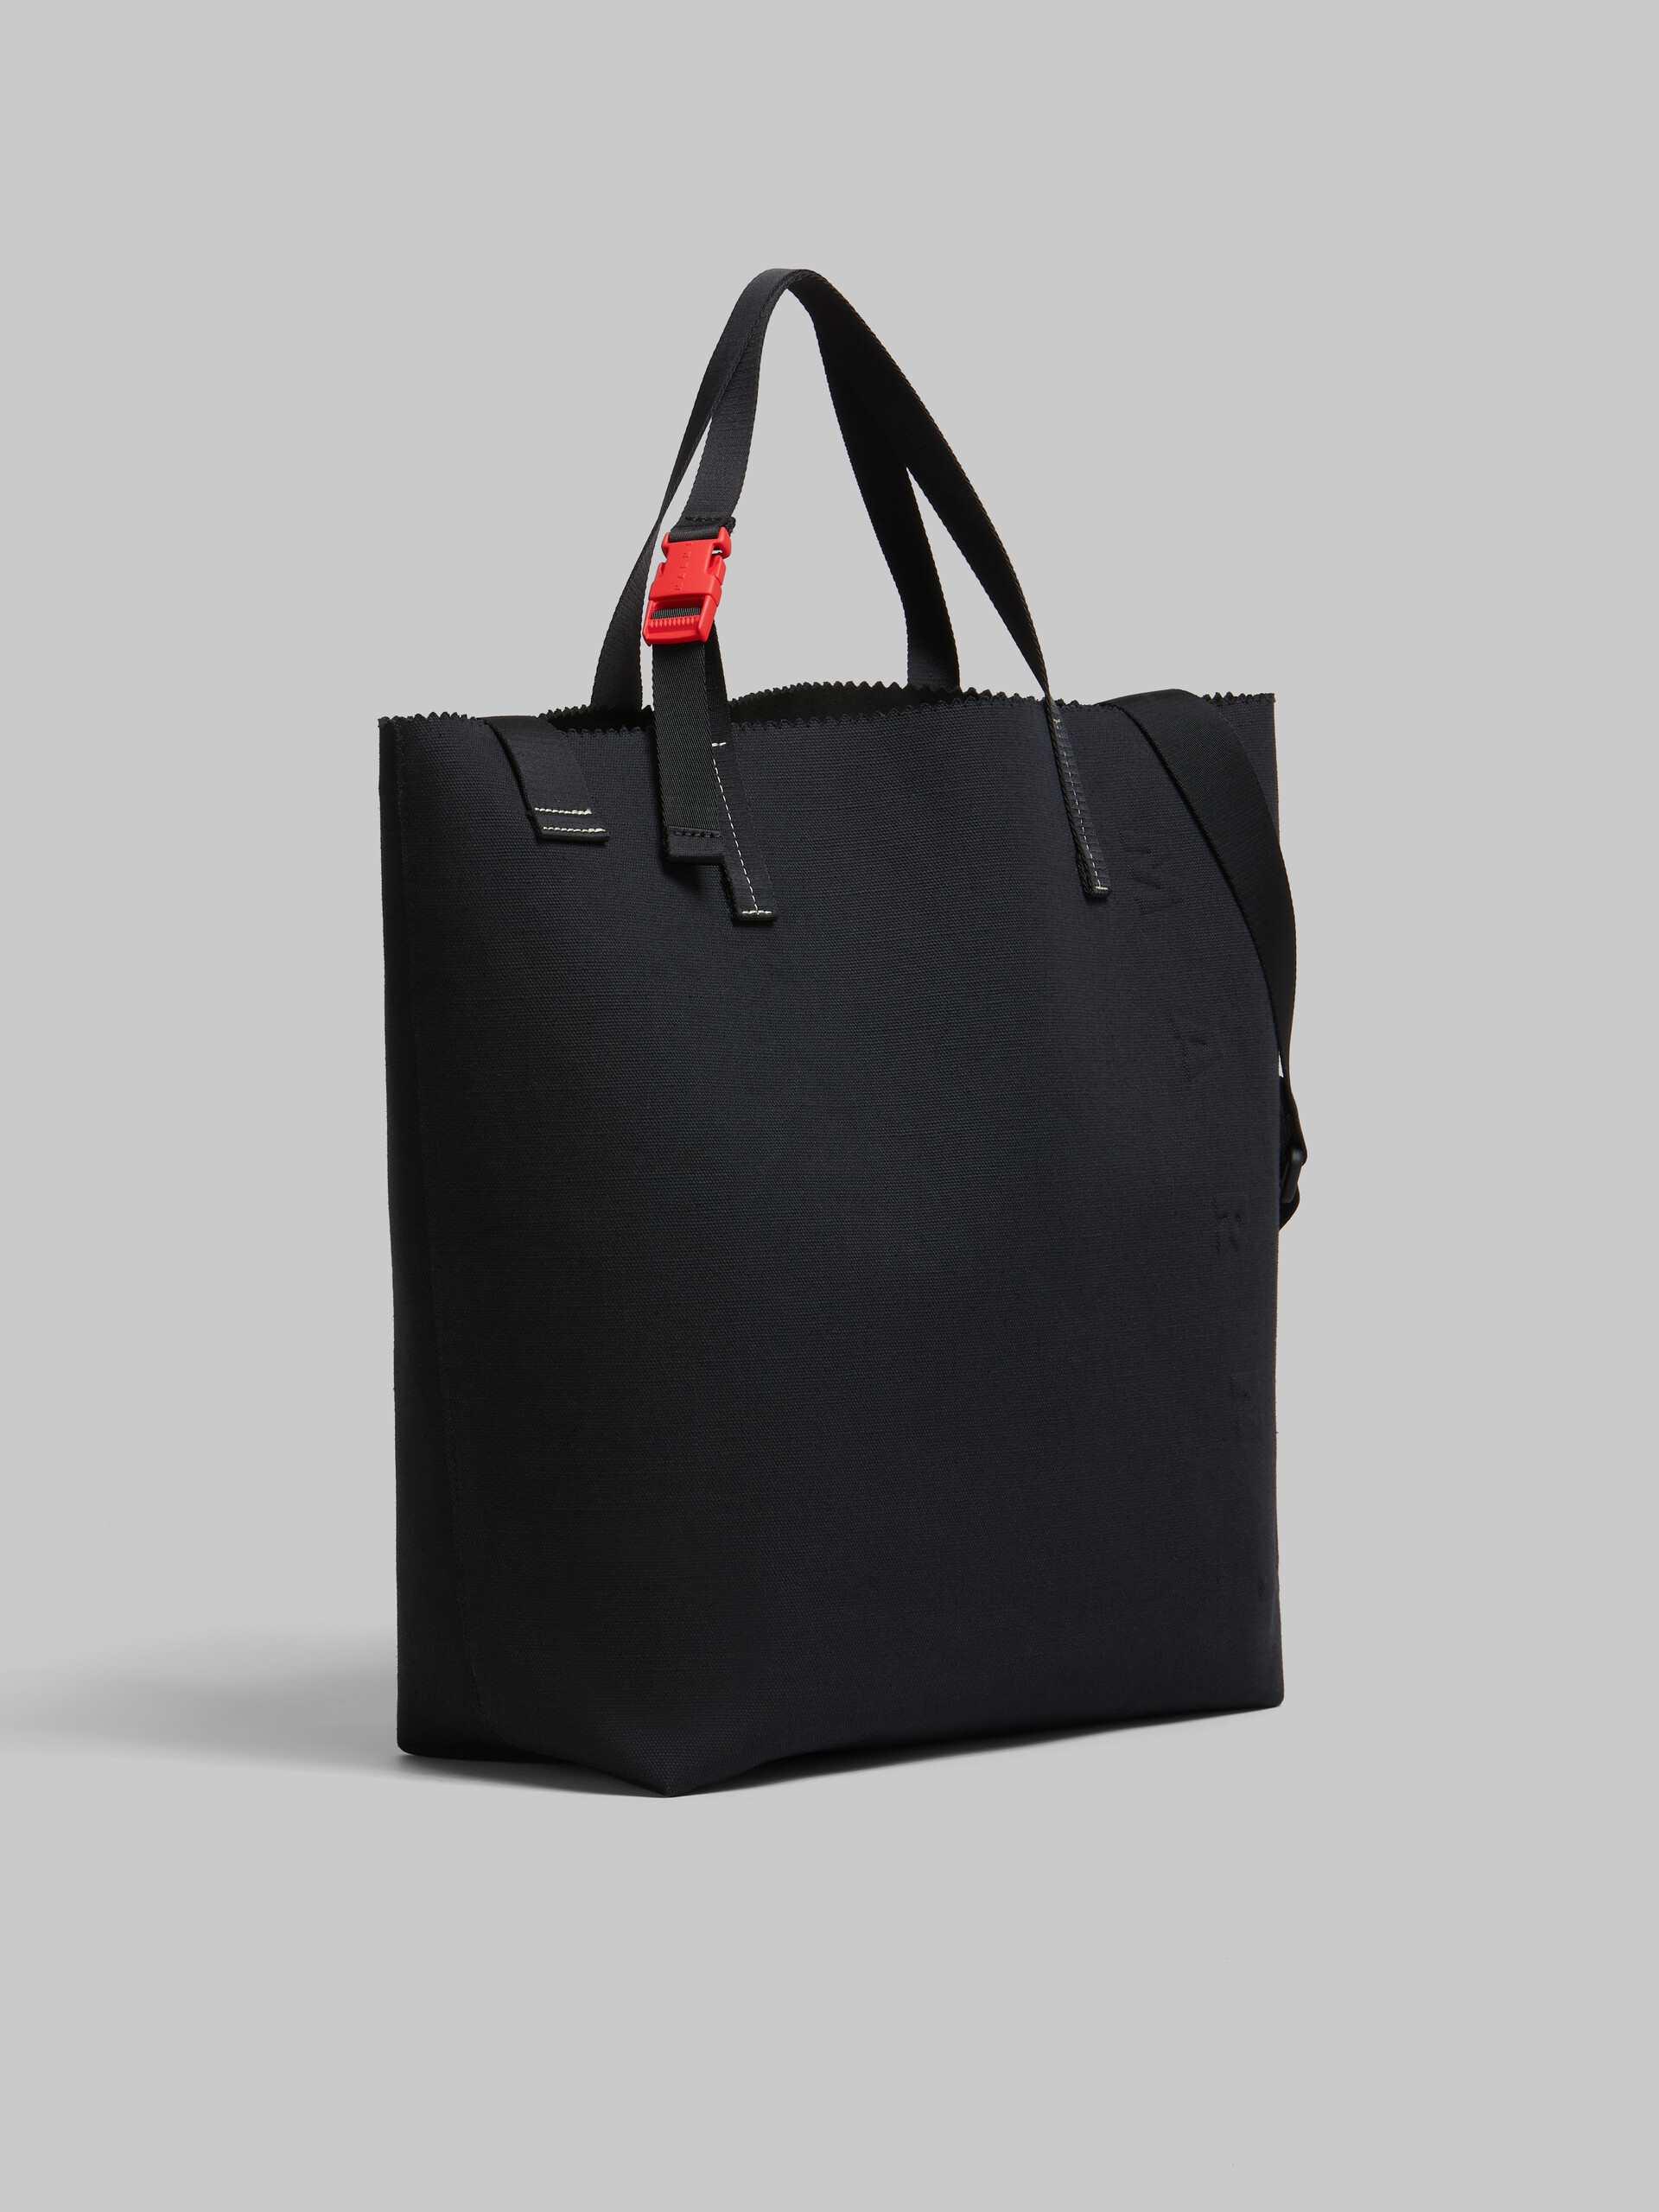 ブラック キャンバス製 Tribeca ショッパー、レイズド マルニロゴ - ショッピングバッグ - Image 6